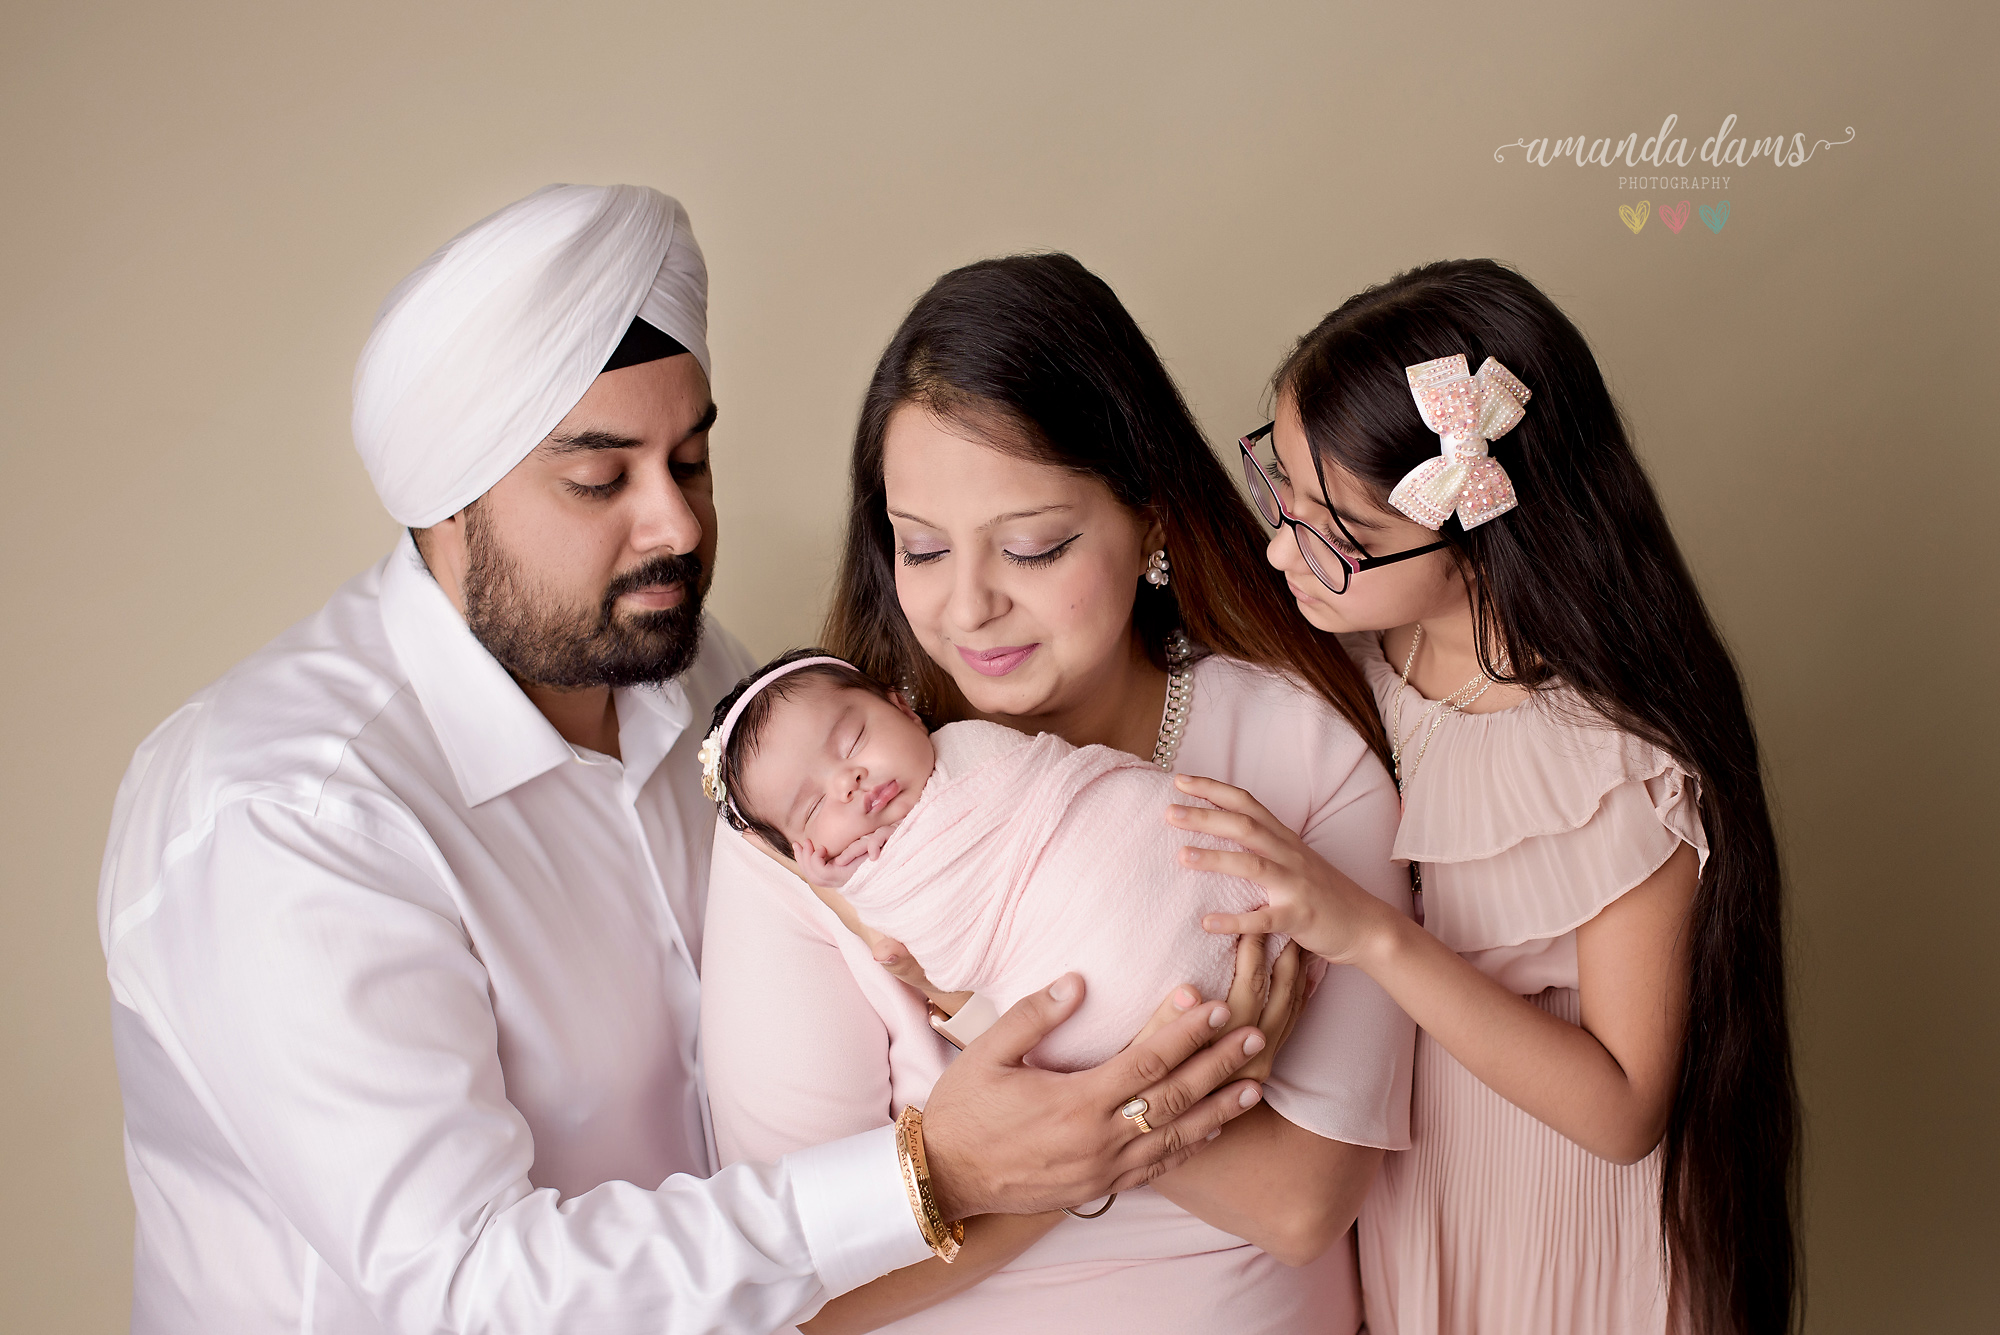 Family Photography Calgary Amanda Dams Photography Family Holding Newborn Baby